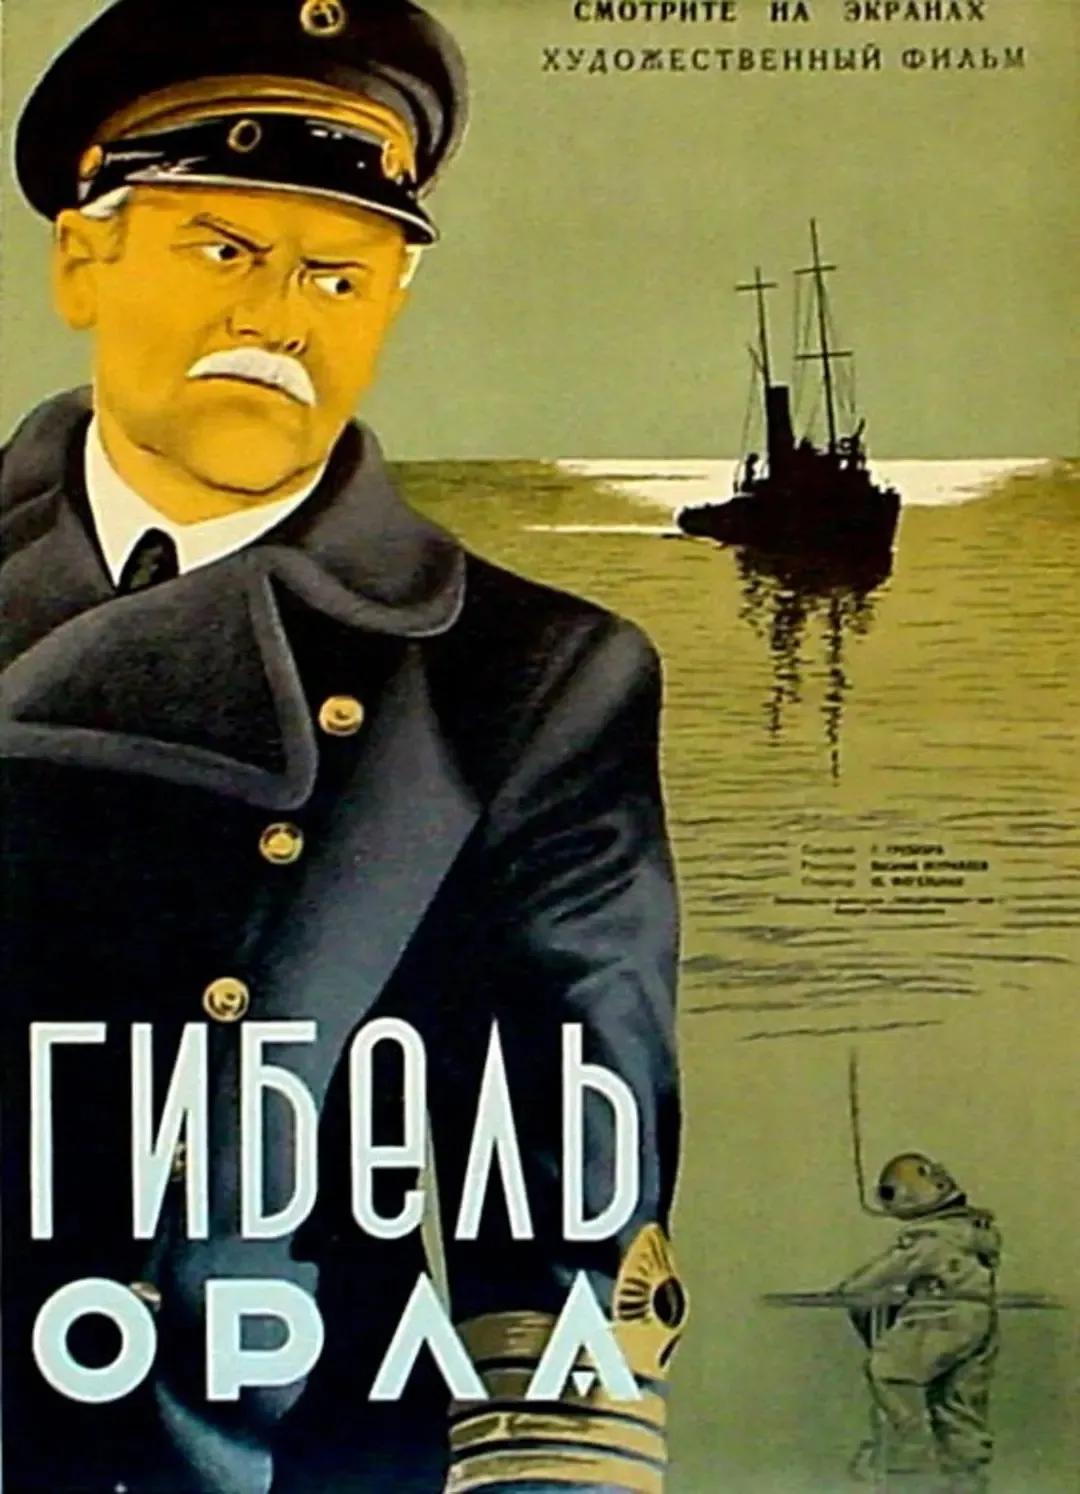 世界电影（0179）苏联电影《海鹰号遇难记》（1951）剧照欣赏